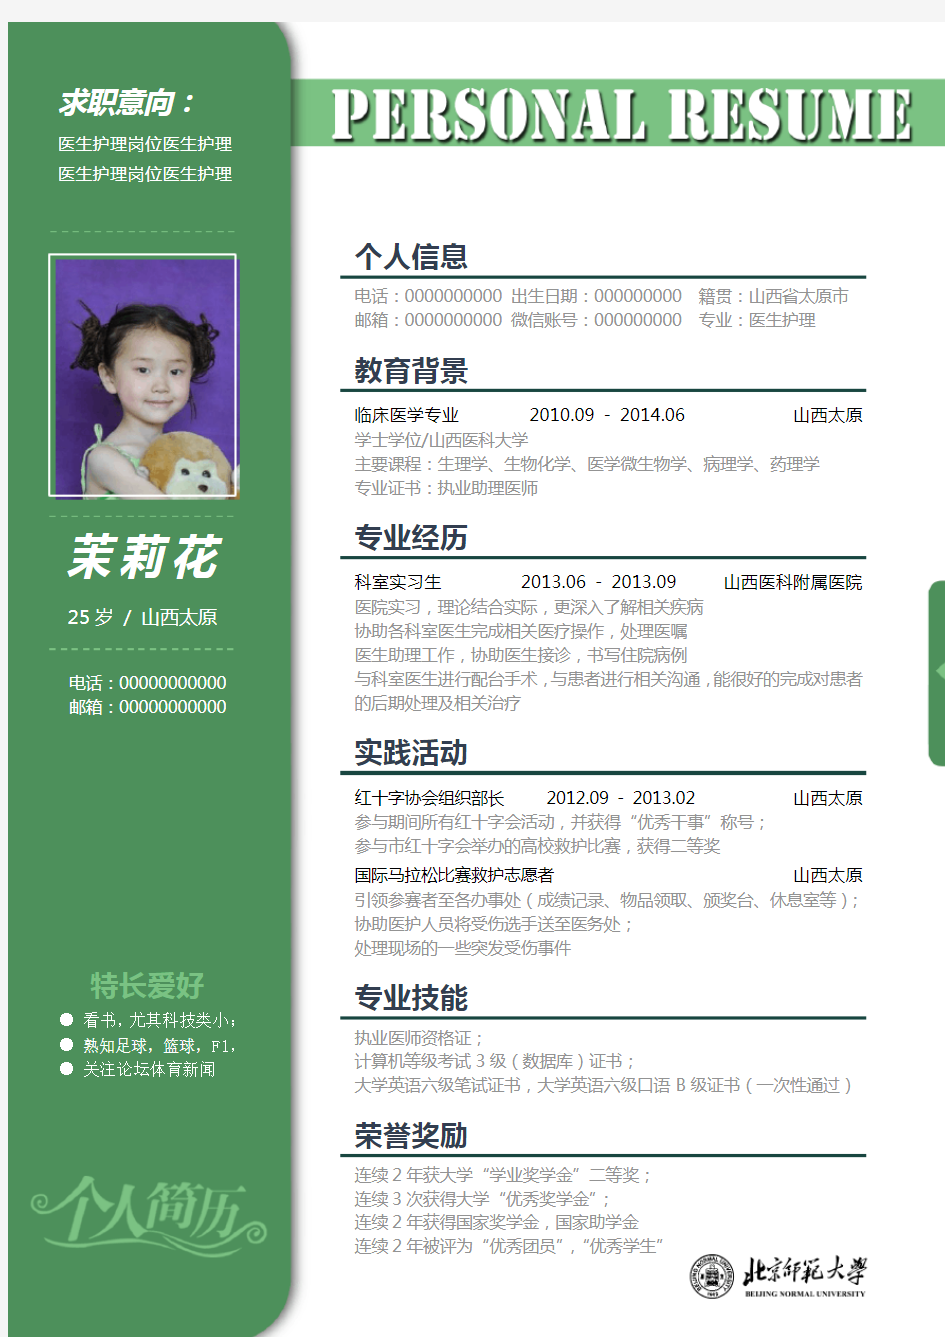 北京师范大学优秀个人求职简历模板—388